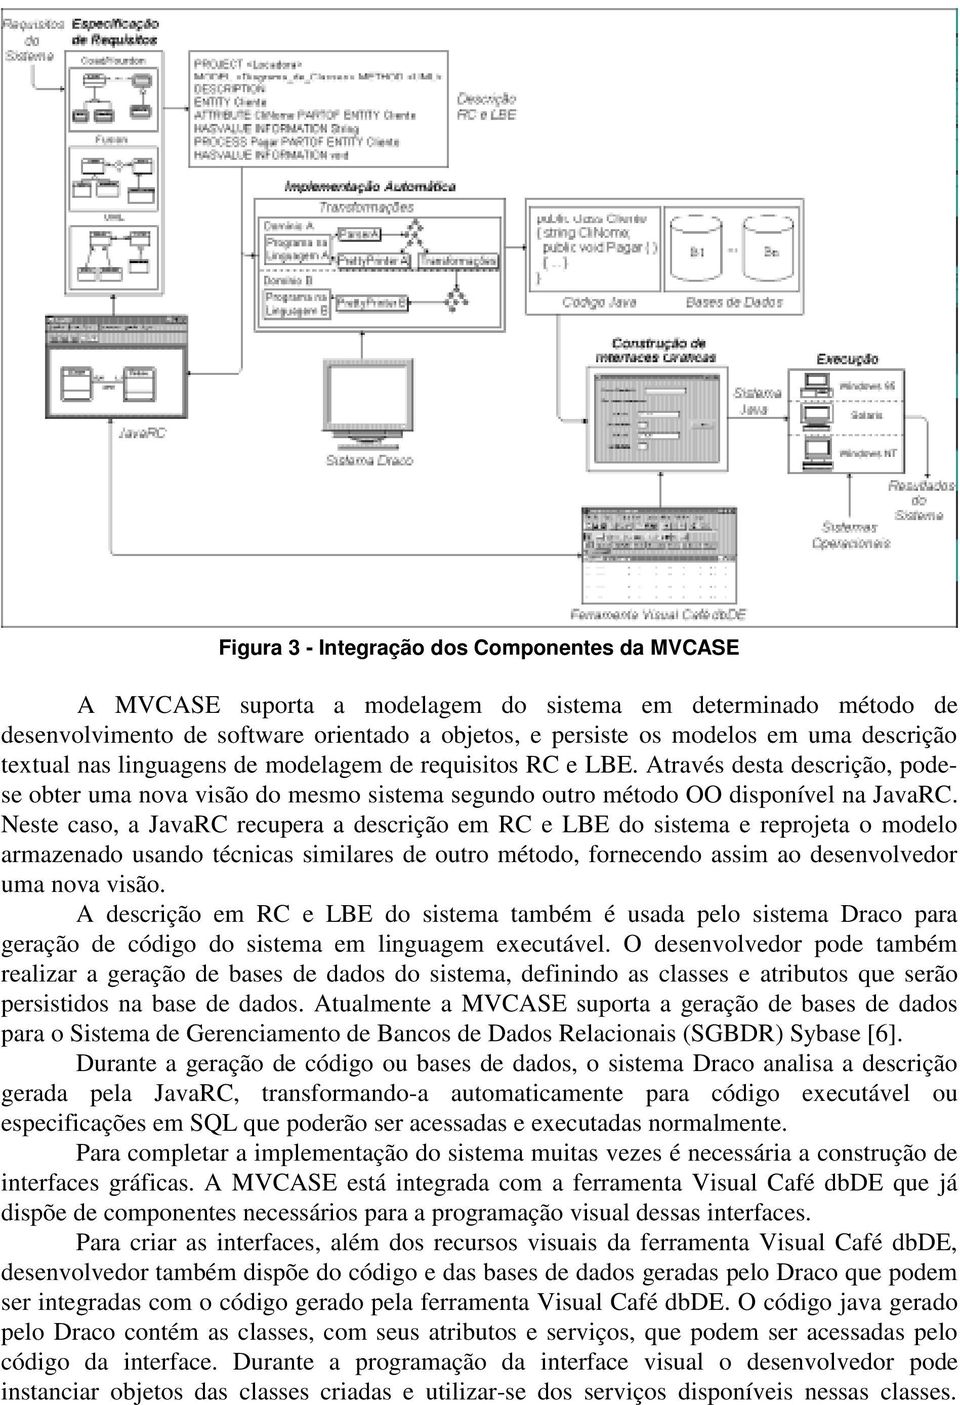 Neste caso, a JavaRC recupera a descrição em RC e LBE do sistema e reprojeta o modelo armazenado usando técnicas similares de outro método, fornecendo assim ao desenvolvedor uma nova visão.